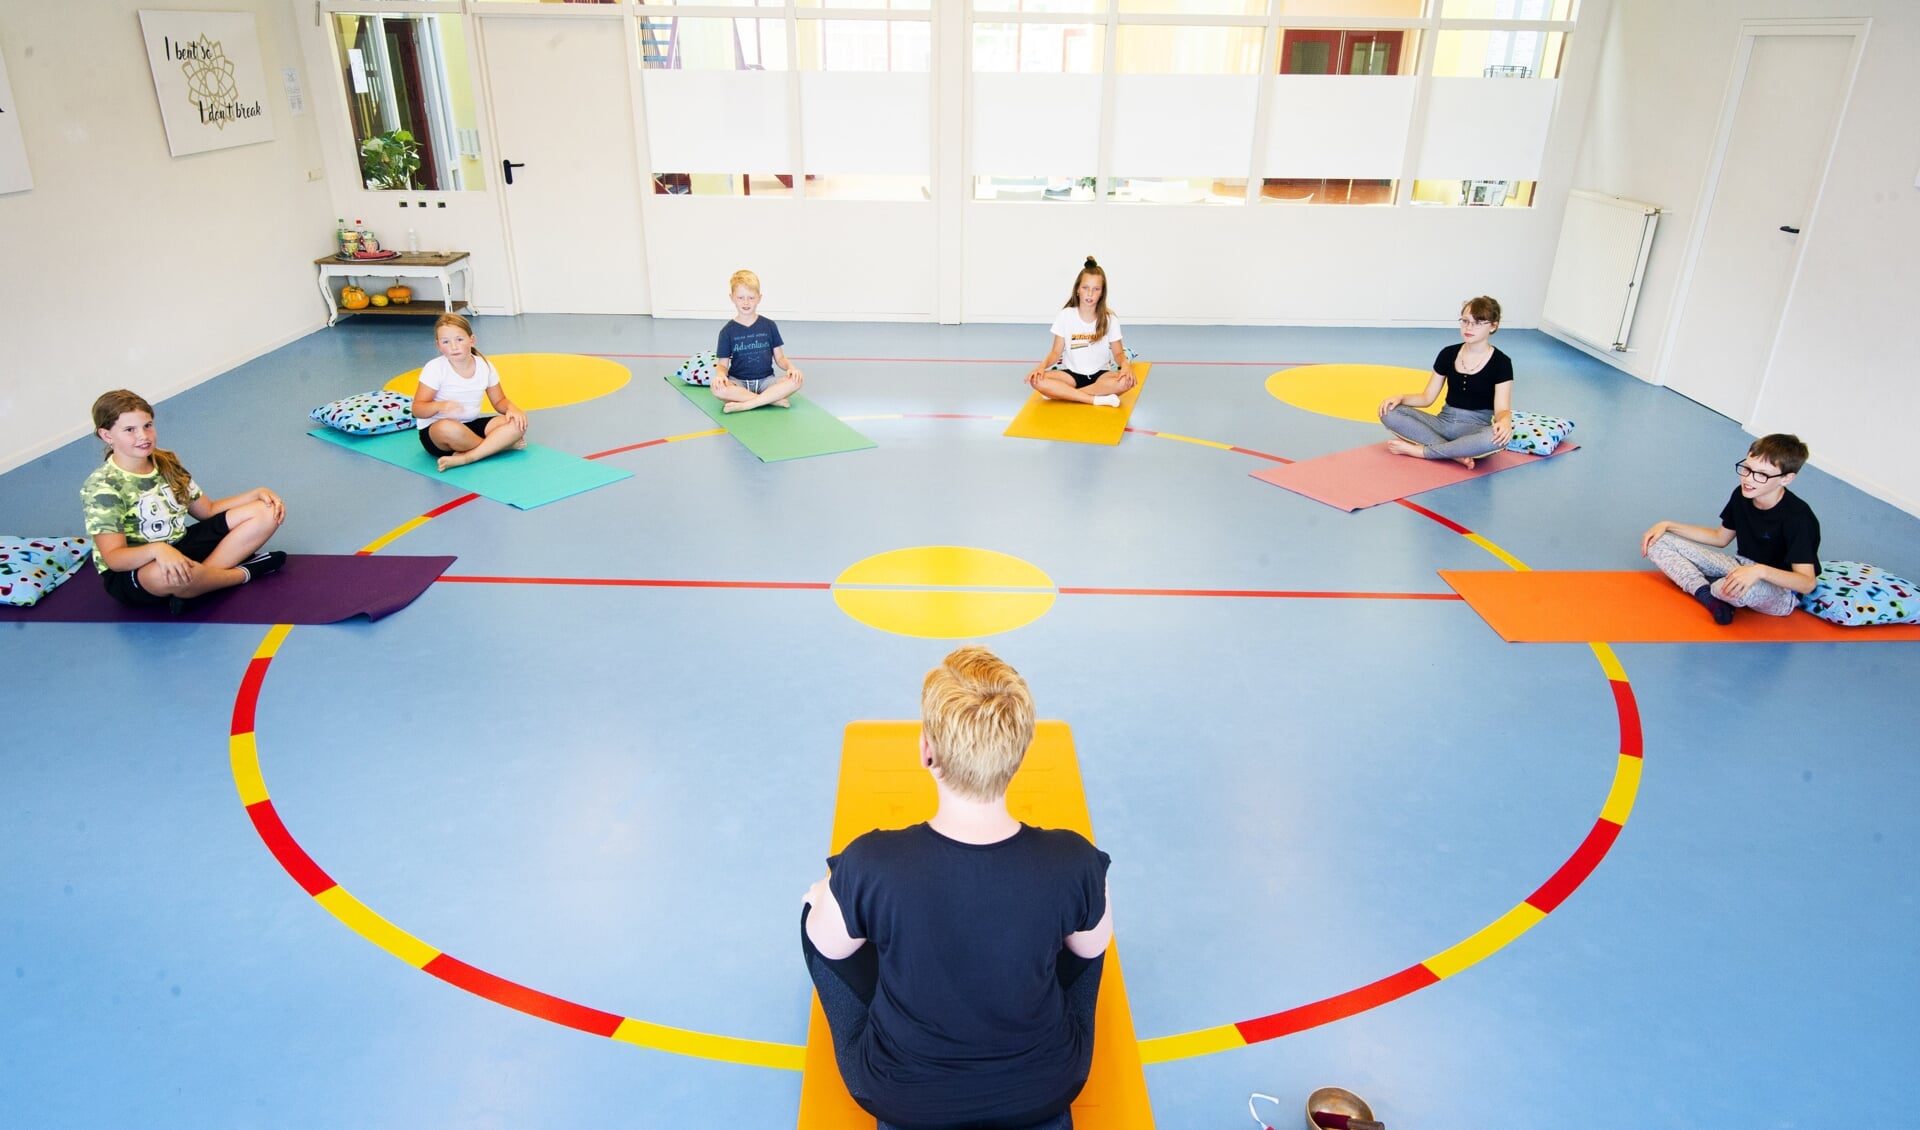 Yogamatties biedt yogalessen en mindfulnesstrainingen aan kinderen en tieners.